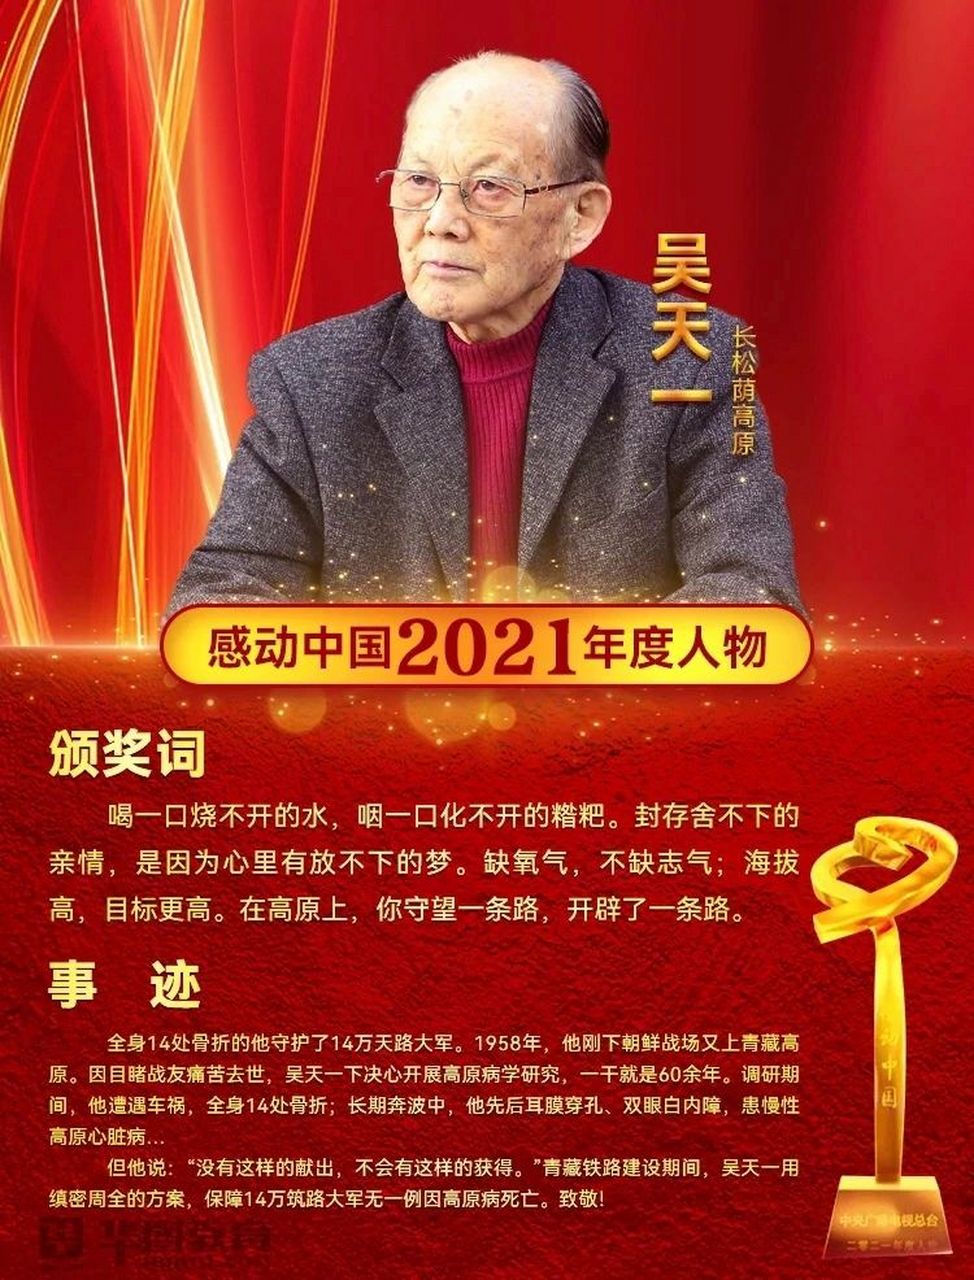 感动中国2021年度人物事迹&颁奖词&适用主题   1 中国核潜艇之父